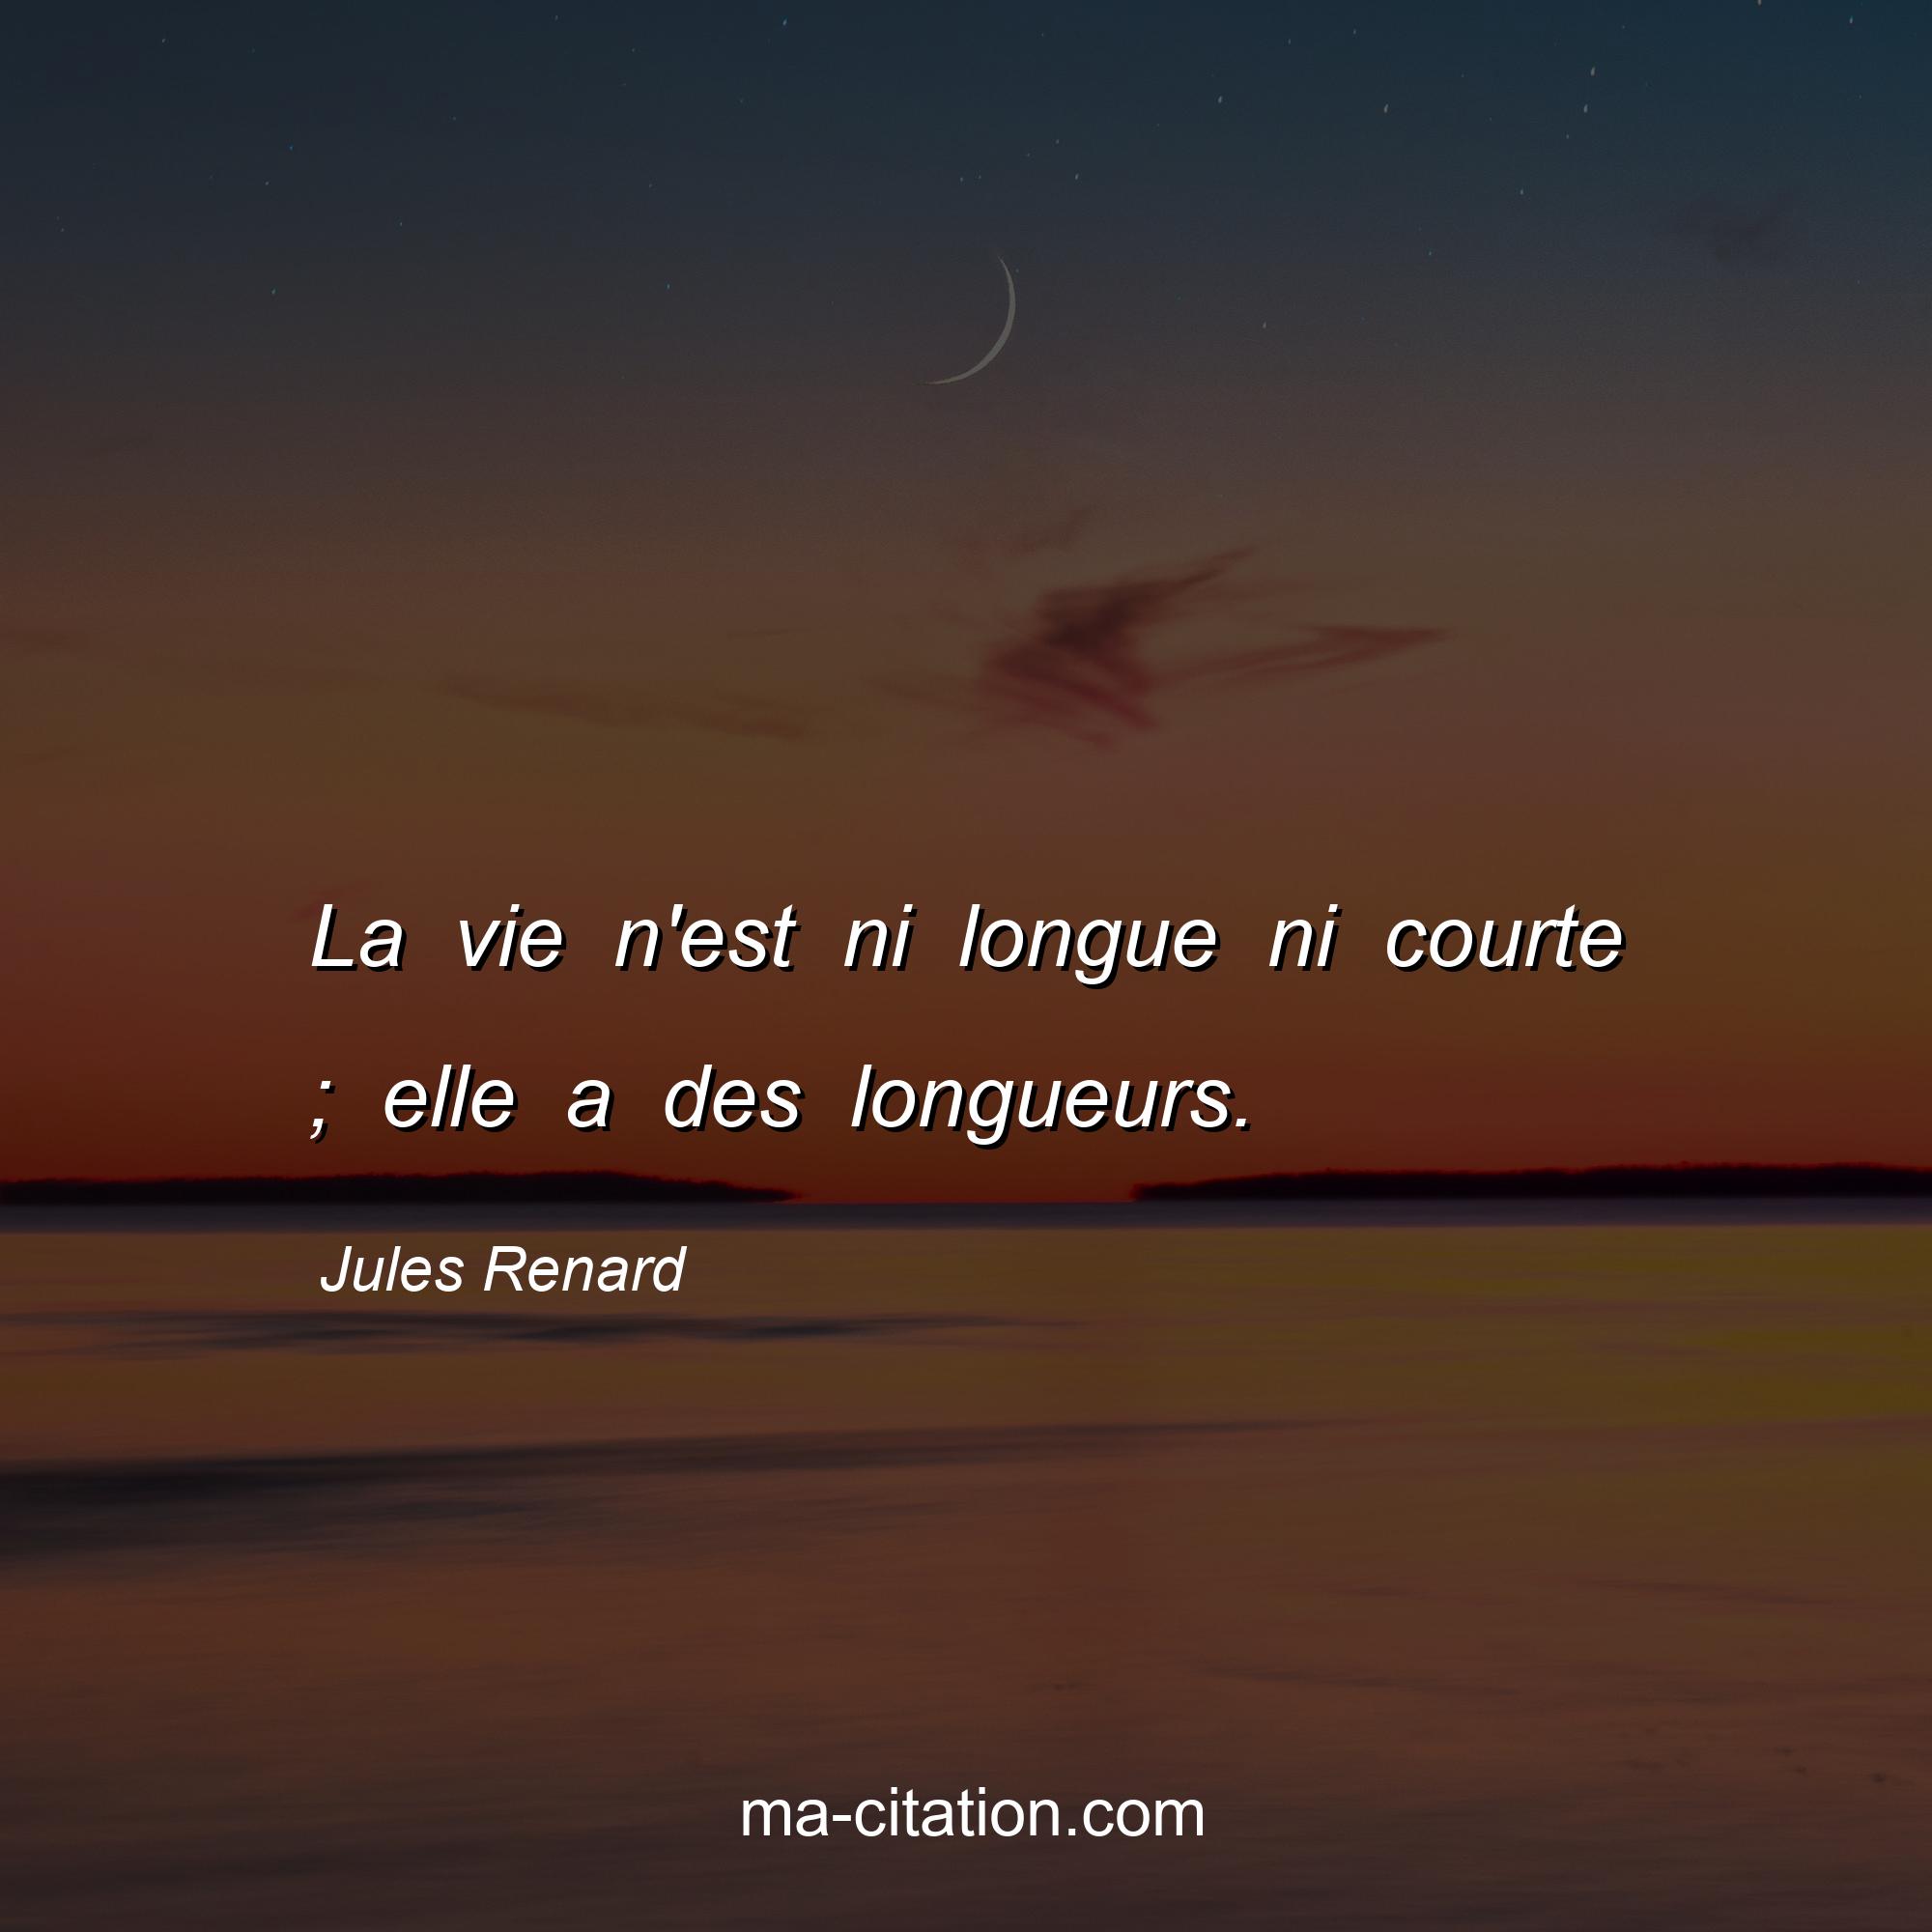 Jules Renard : La vie n'est ni longue ni courte ; elle a des longueurs.